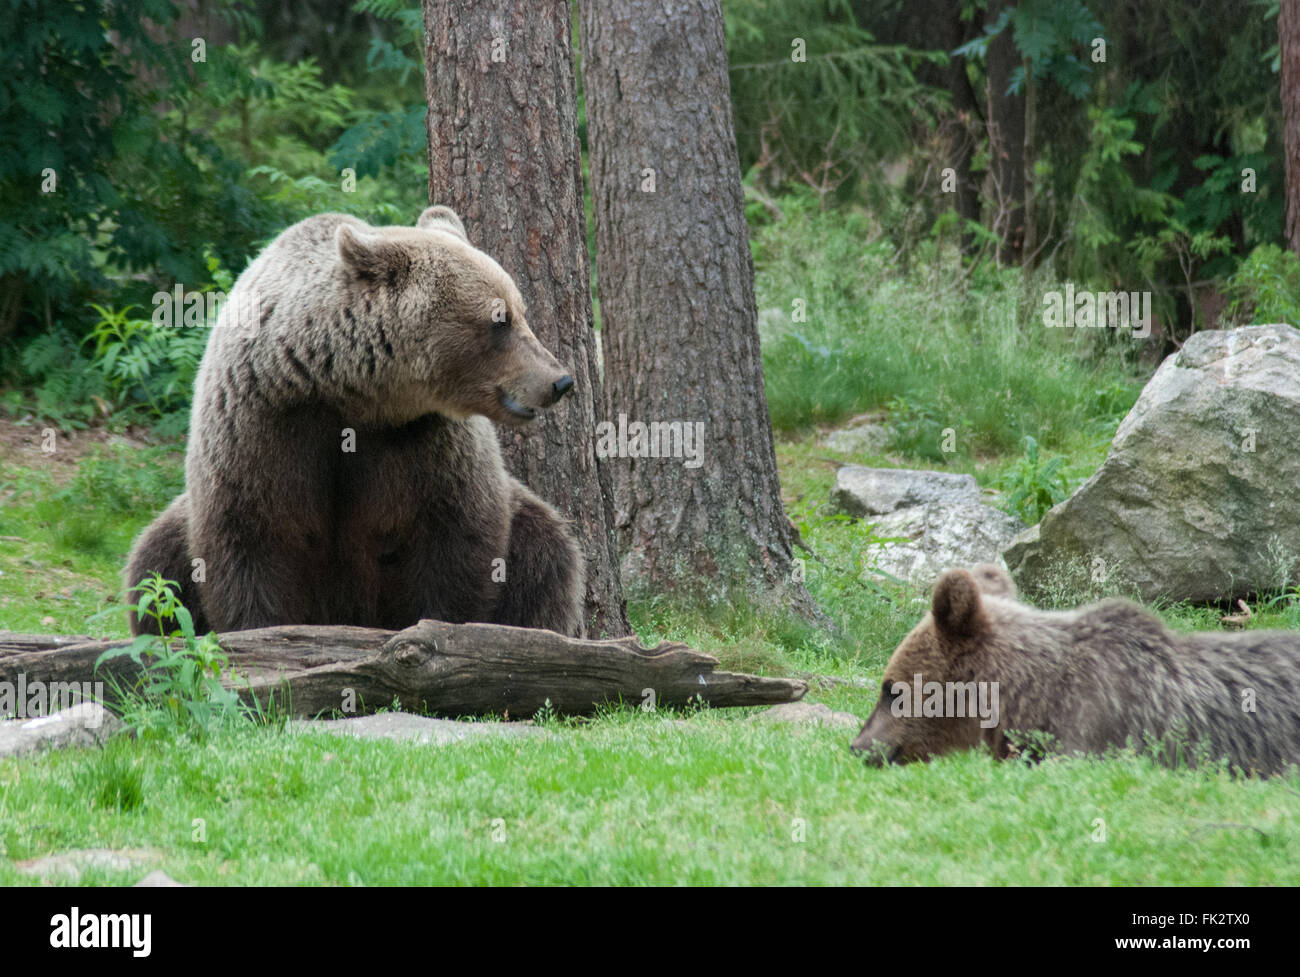 Unione di orso bruno eurasiatico o l'orso bruno (Ursus arctos arctos) con cub nella Taiga foresta in Finlandia orientale. Foto Stock